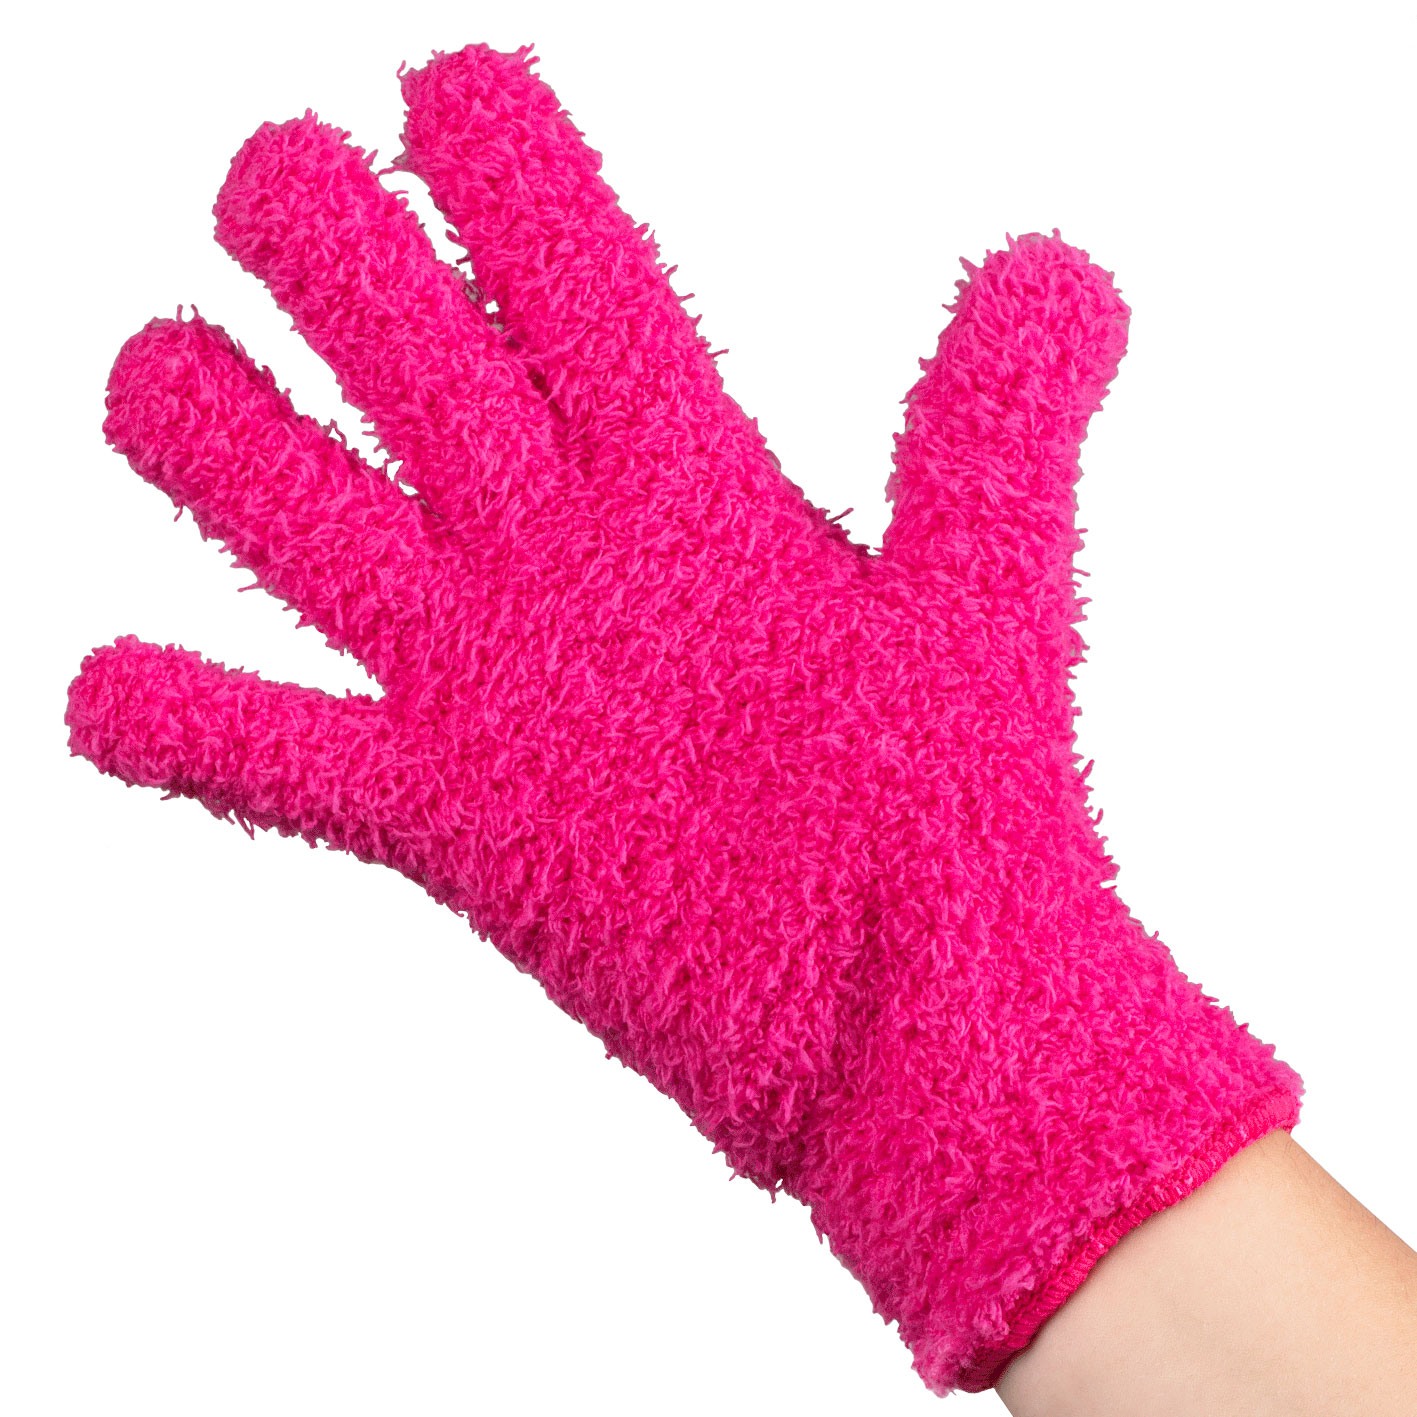 Framar GLOVES: Bleach Blender Gloves